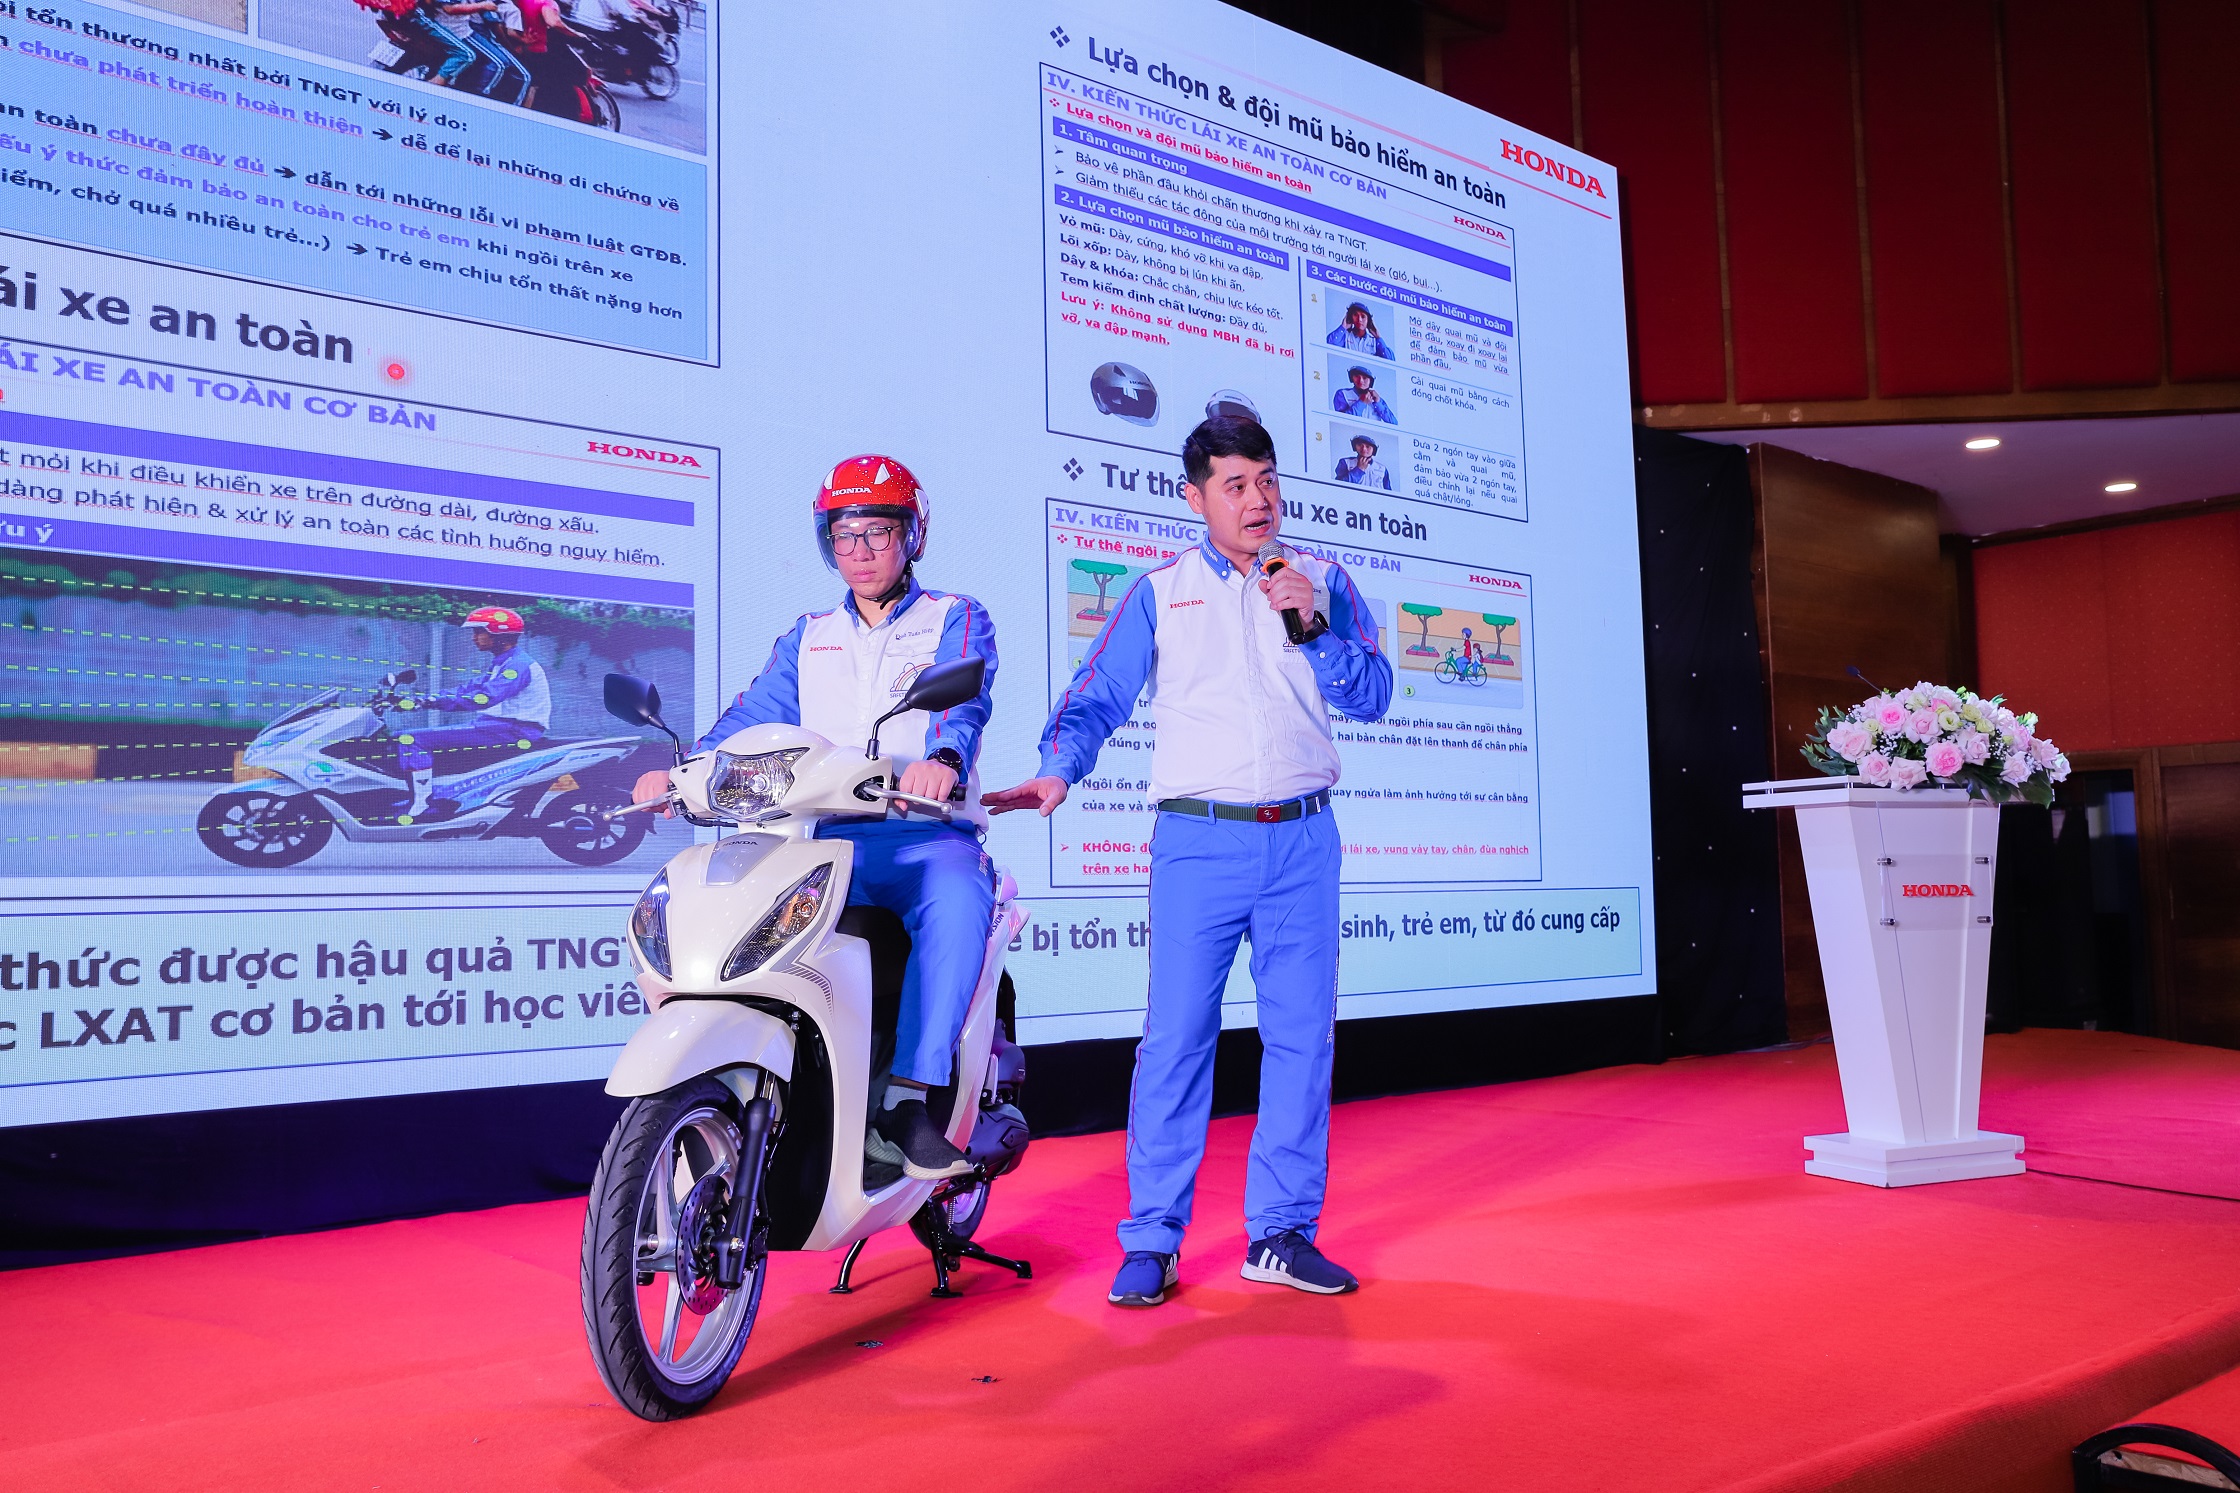 Honda Việt Nam tổ chức Hội thảo tăng cường vai trò quản lý, giáo dục ATGT trong các cơ sở giáo dục THPT honda-viet-nam-huong-dan-tu-the-lai-xe-an-toan.jpg